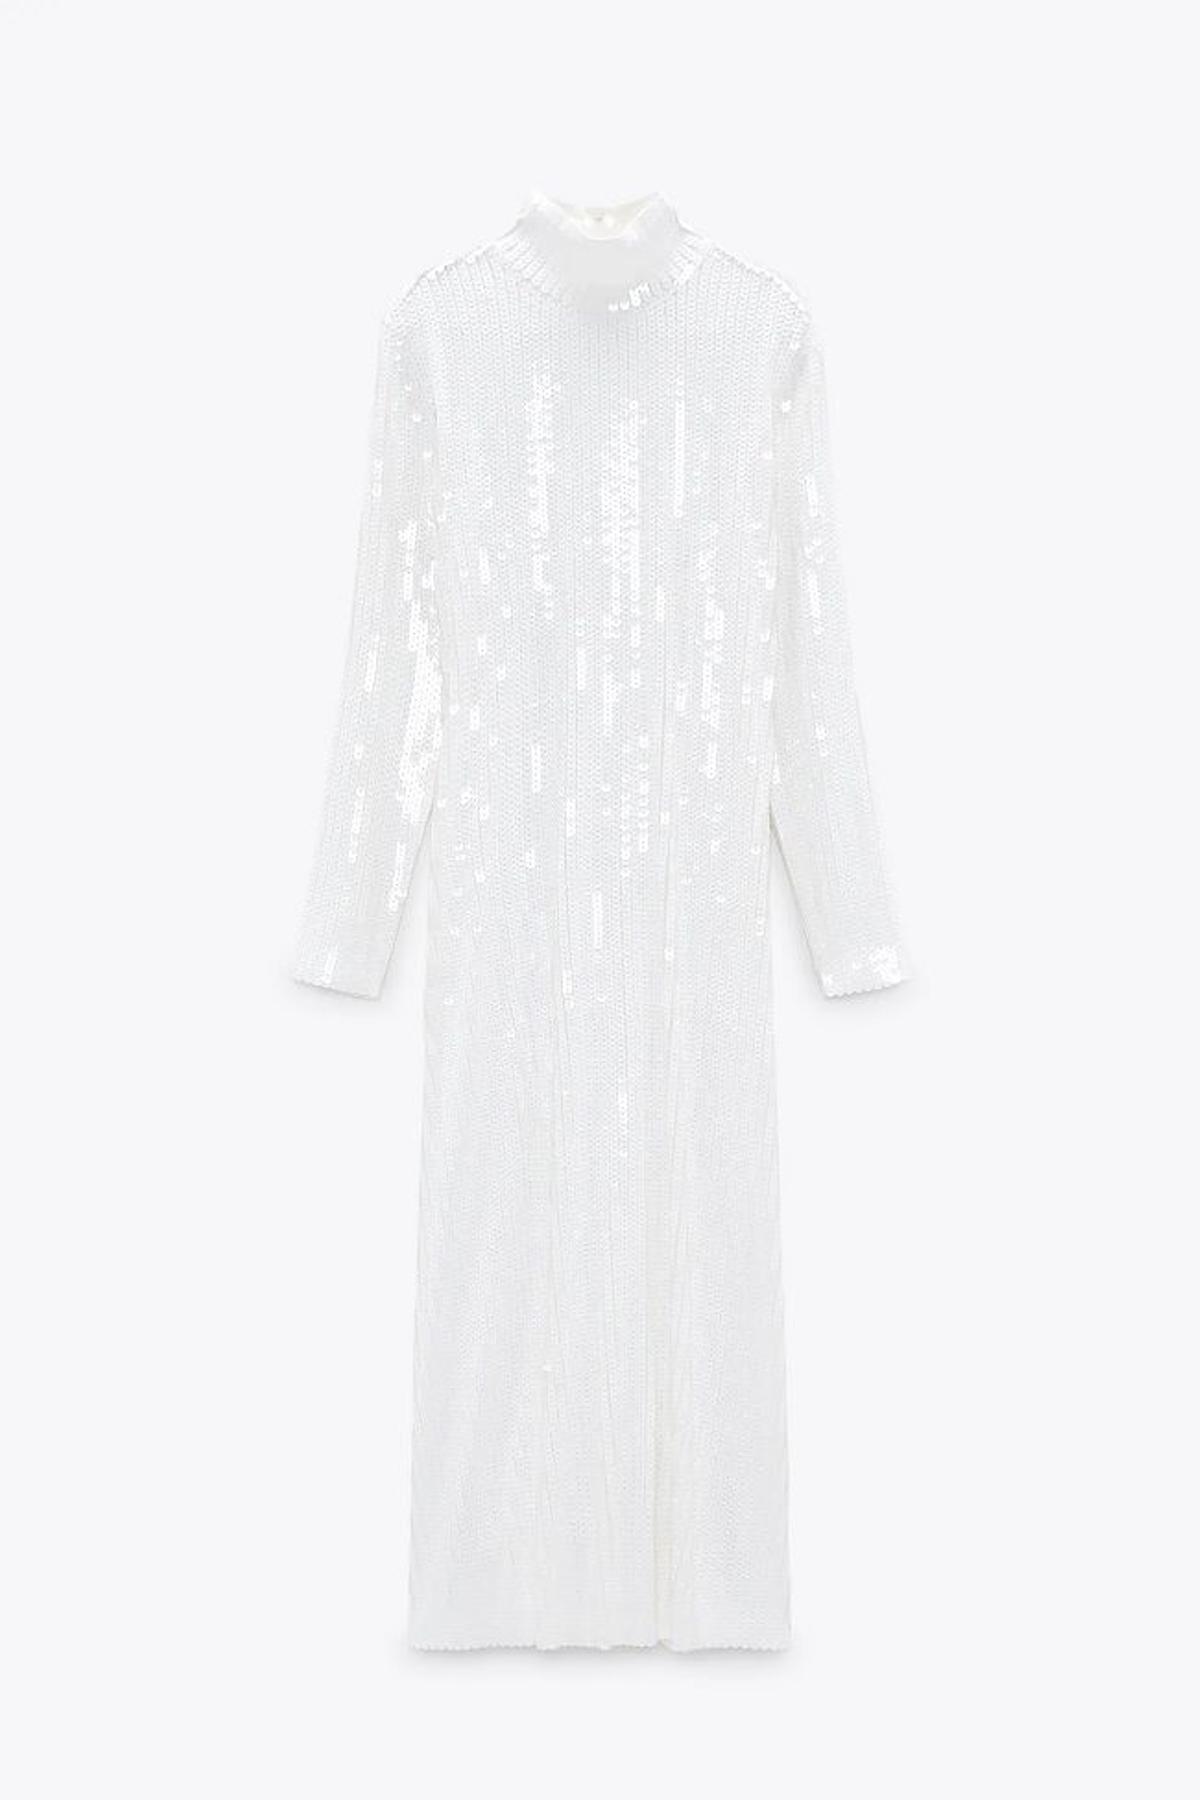 Vestido blanco de punto con lentejuelas, cuello subido y largo 'midi', de Zara